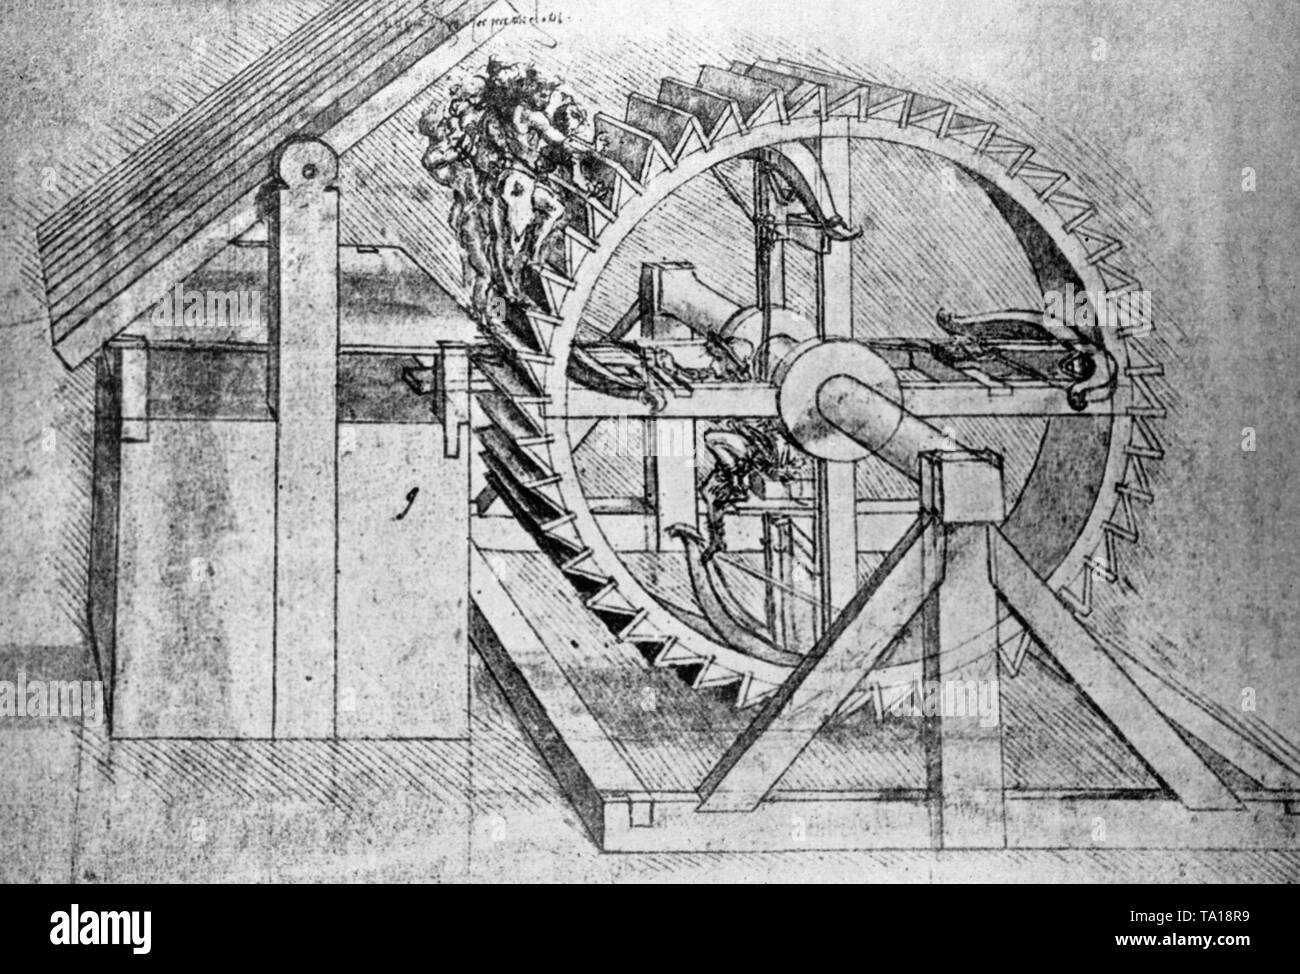 Photo d'une machine de guerre conçue par Leonardo Da Vinci de prendre plusieurs arbalètes. Un treadwheel déplacé par des personnes s'étend de l'arbalète et les incendies. Photo non datée. Banque D'Images